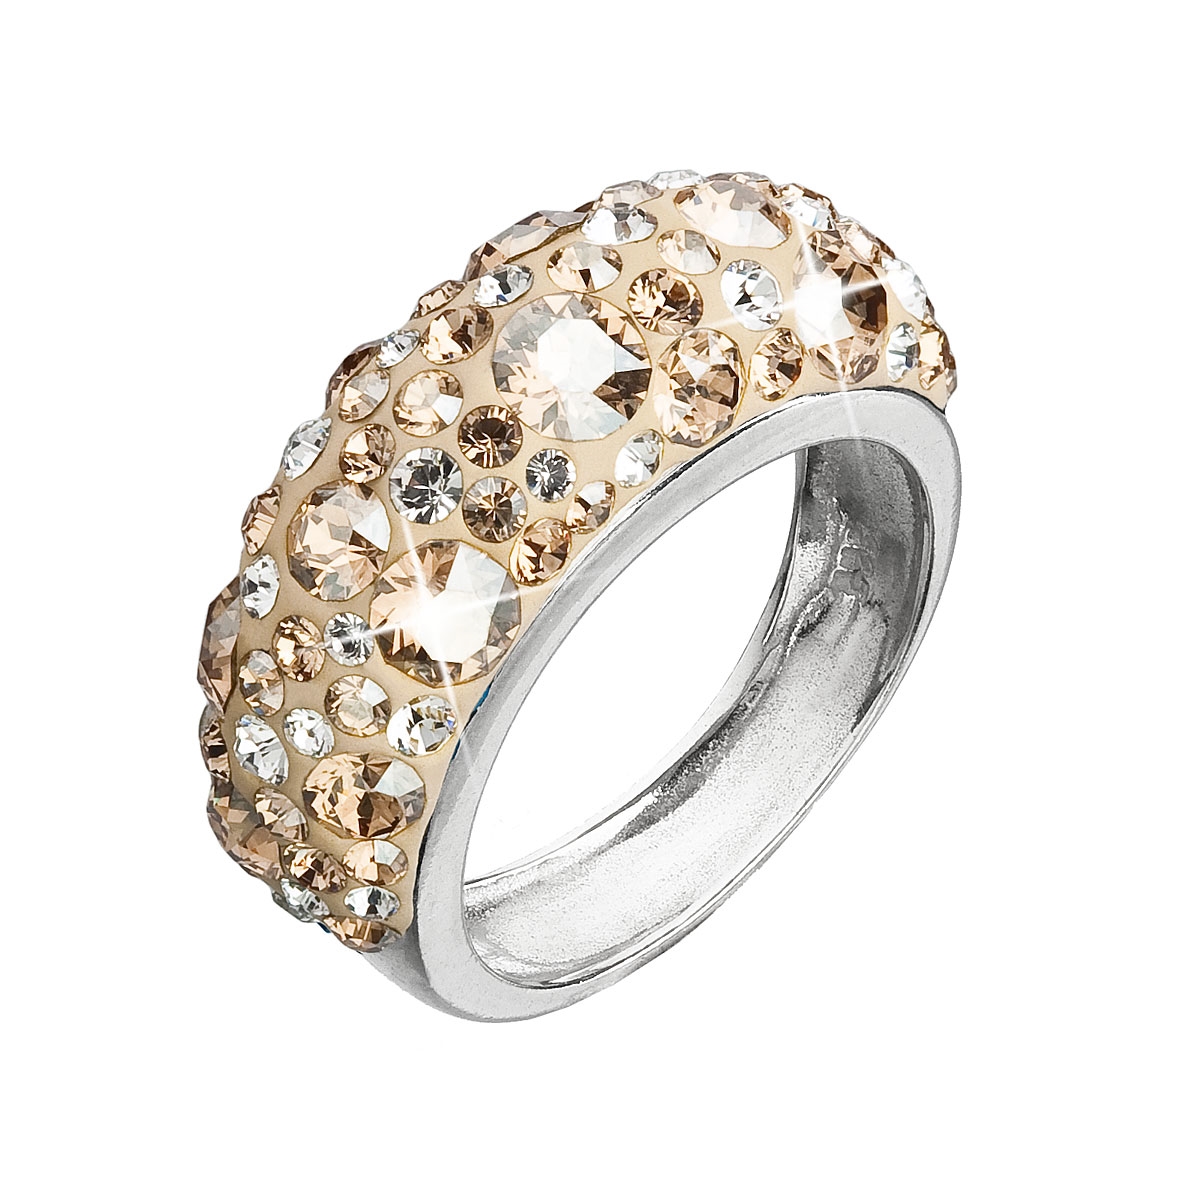 Strieborný prsteň s kryštálmi Crystals from Swarovski ®, Gold